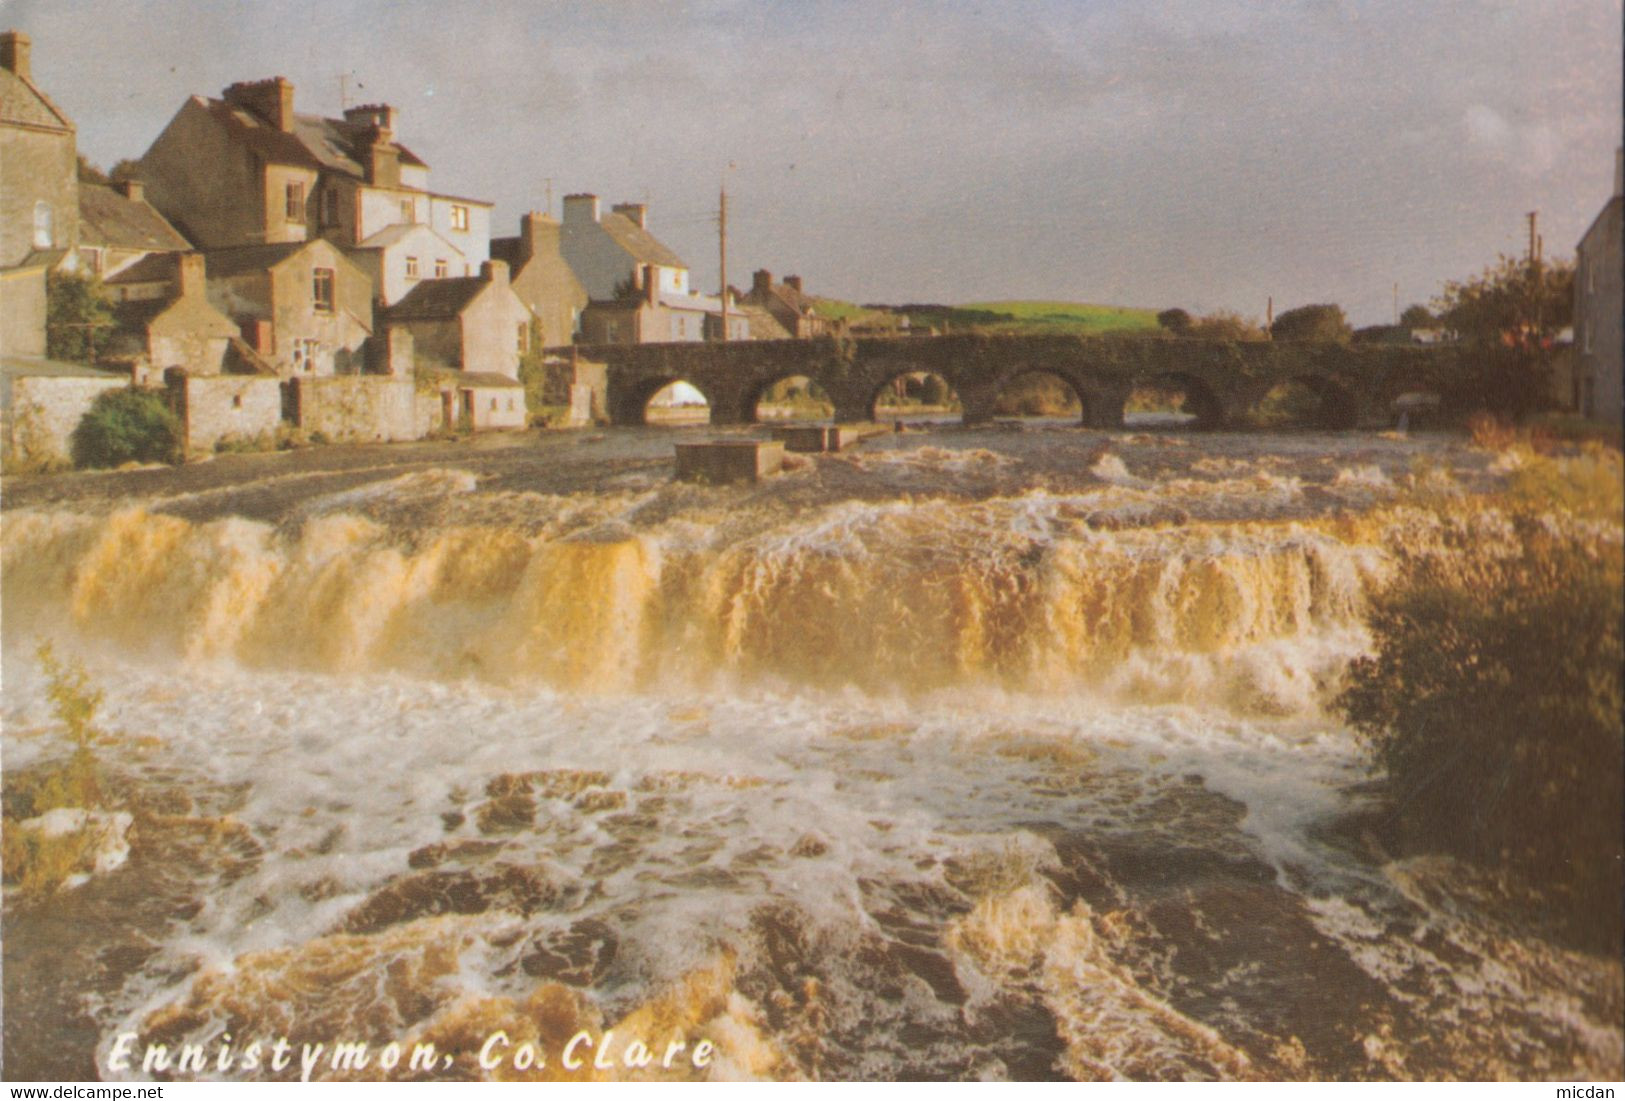 EUIE - The Falls, Ennistymon, Co. CLARE - Clare